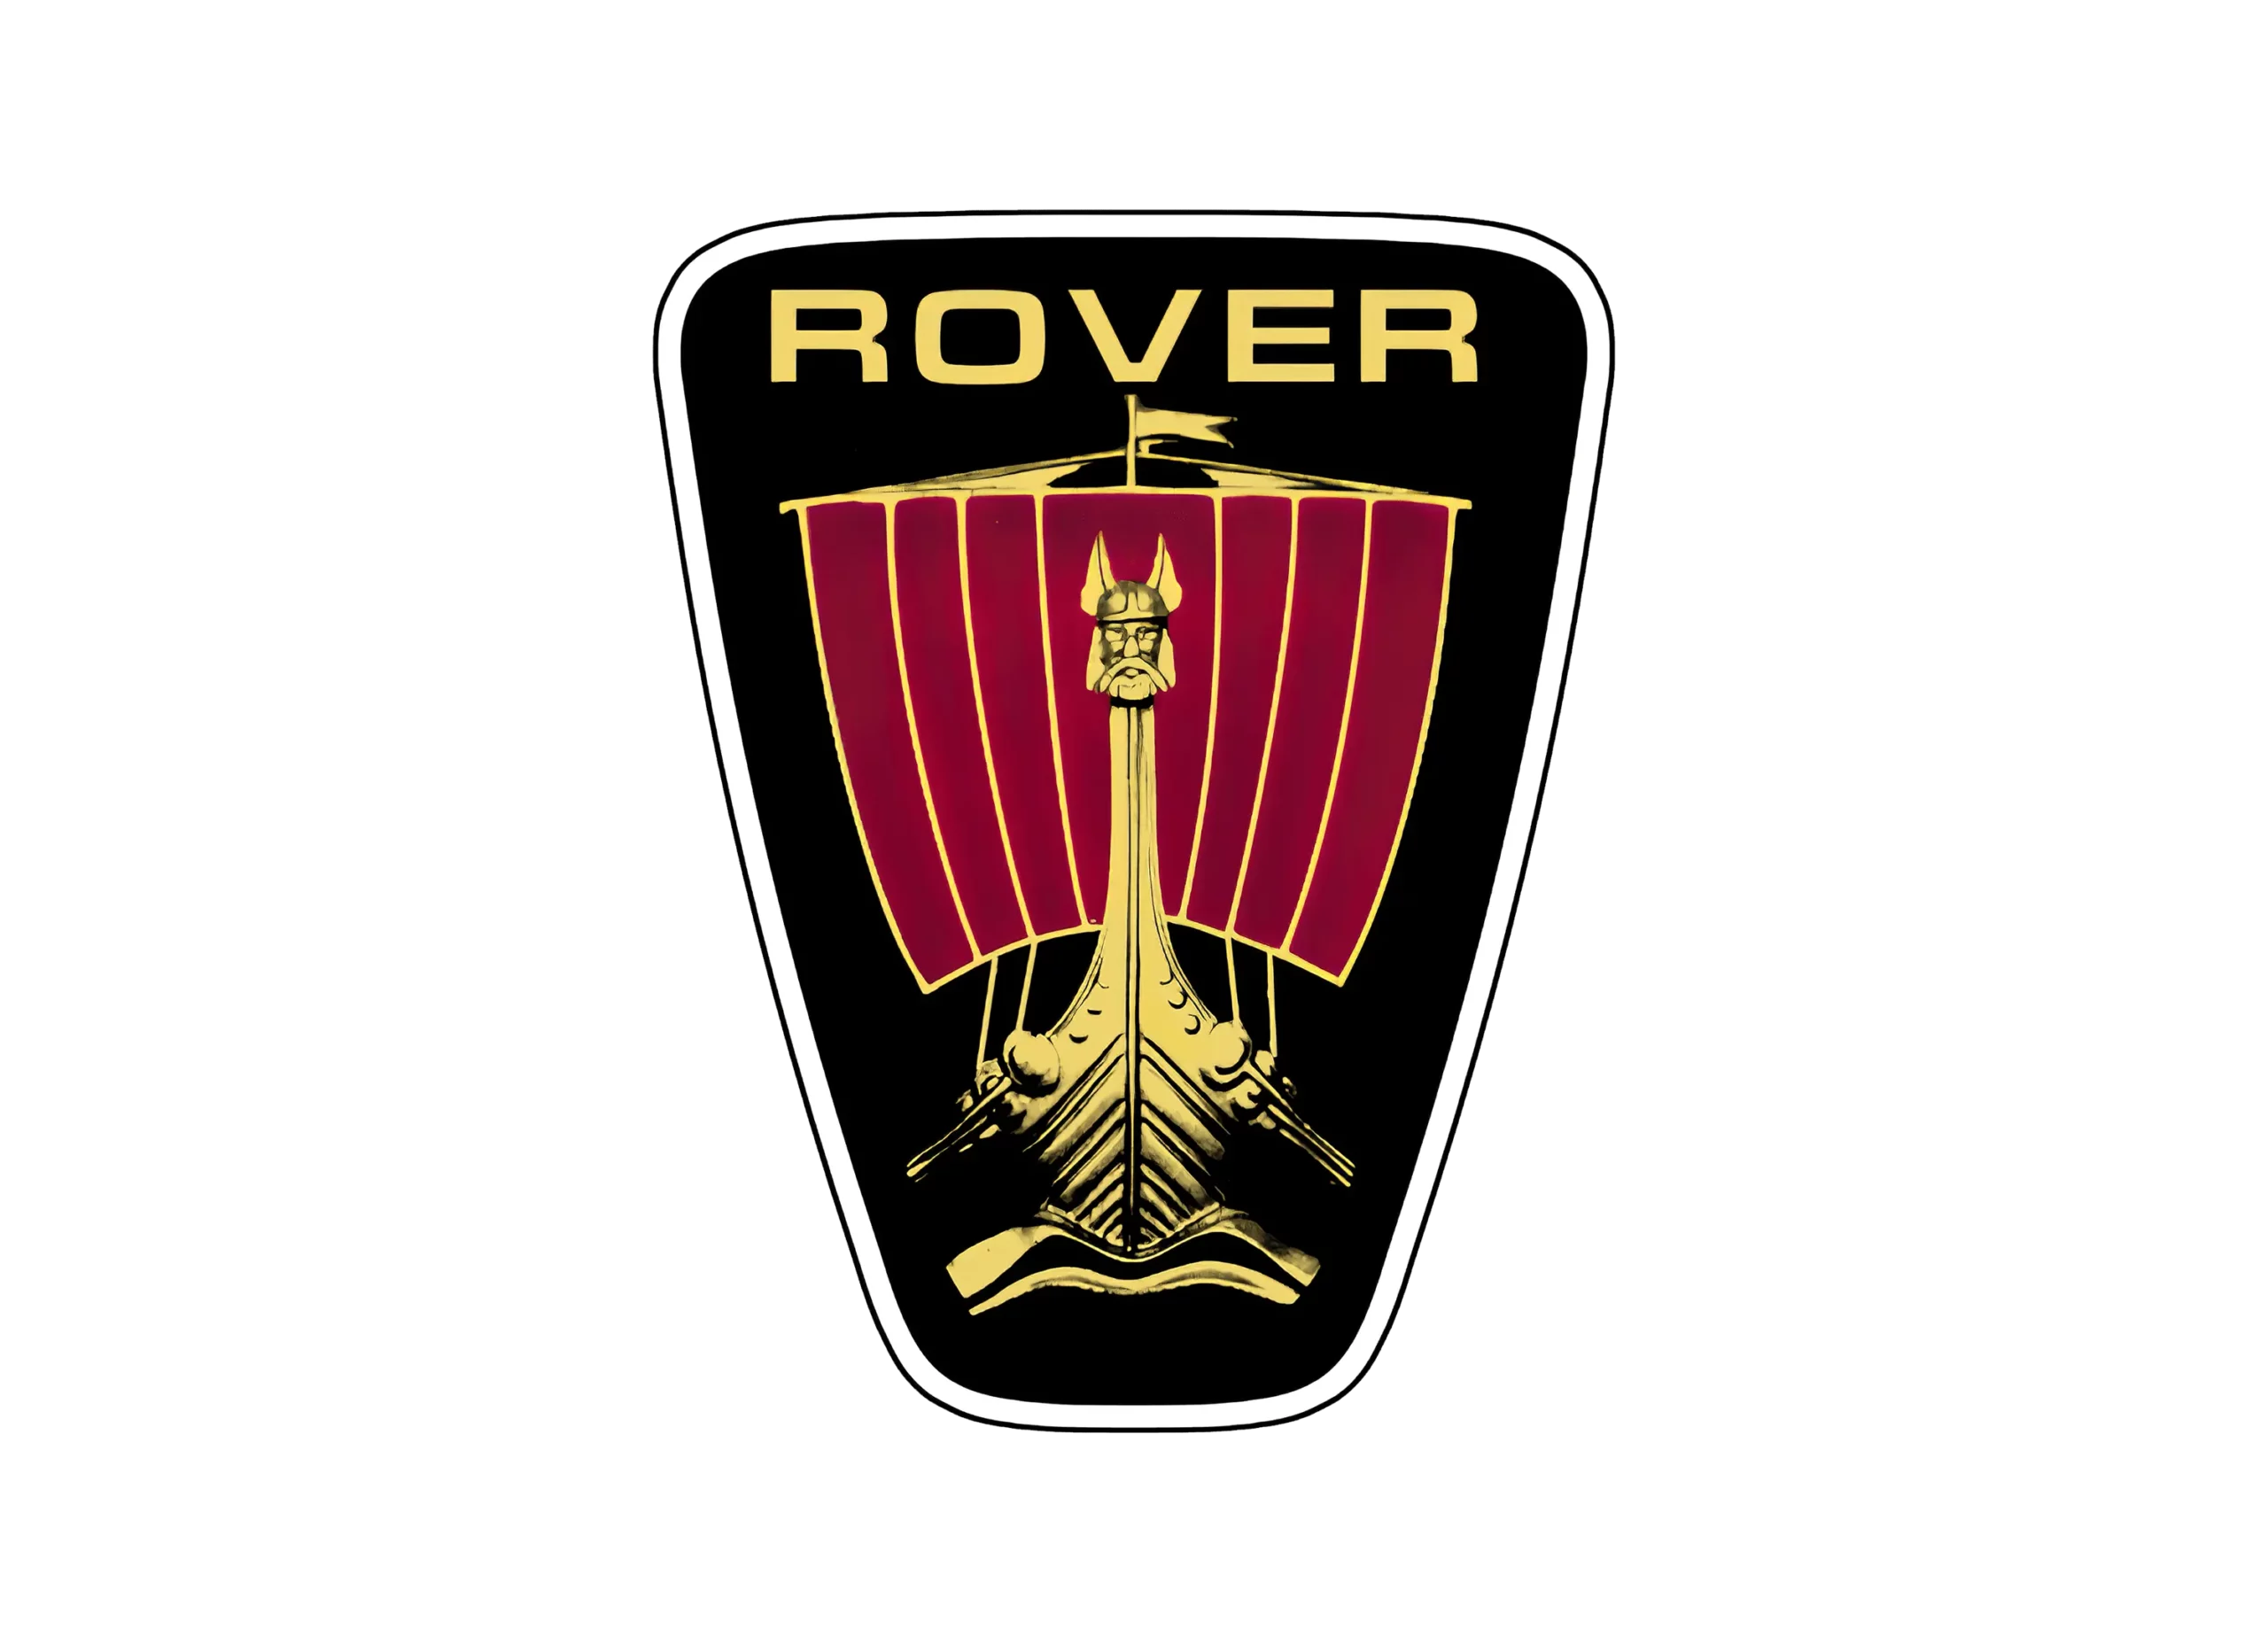 Rover logo 1979-1989